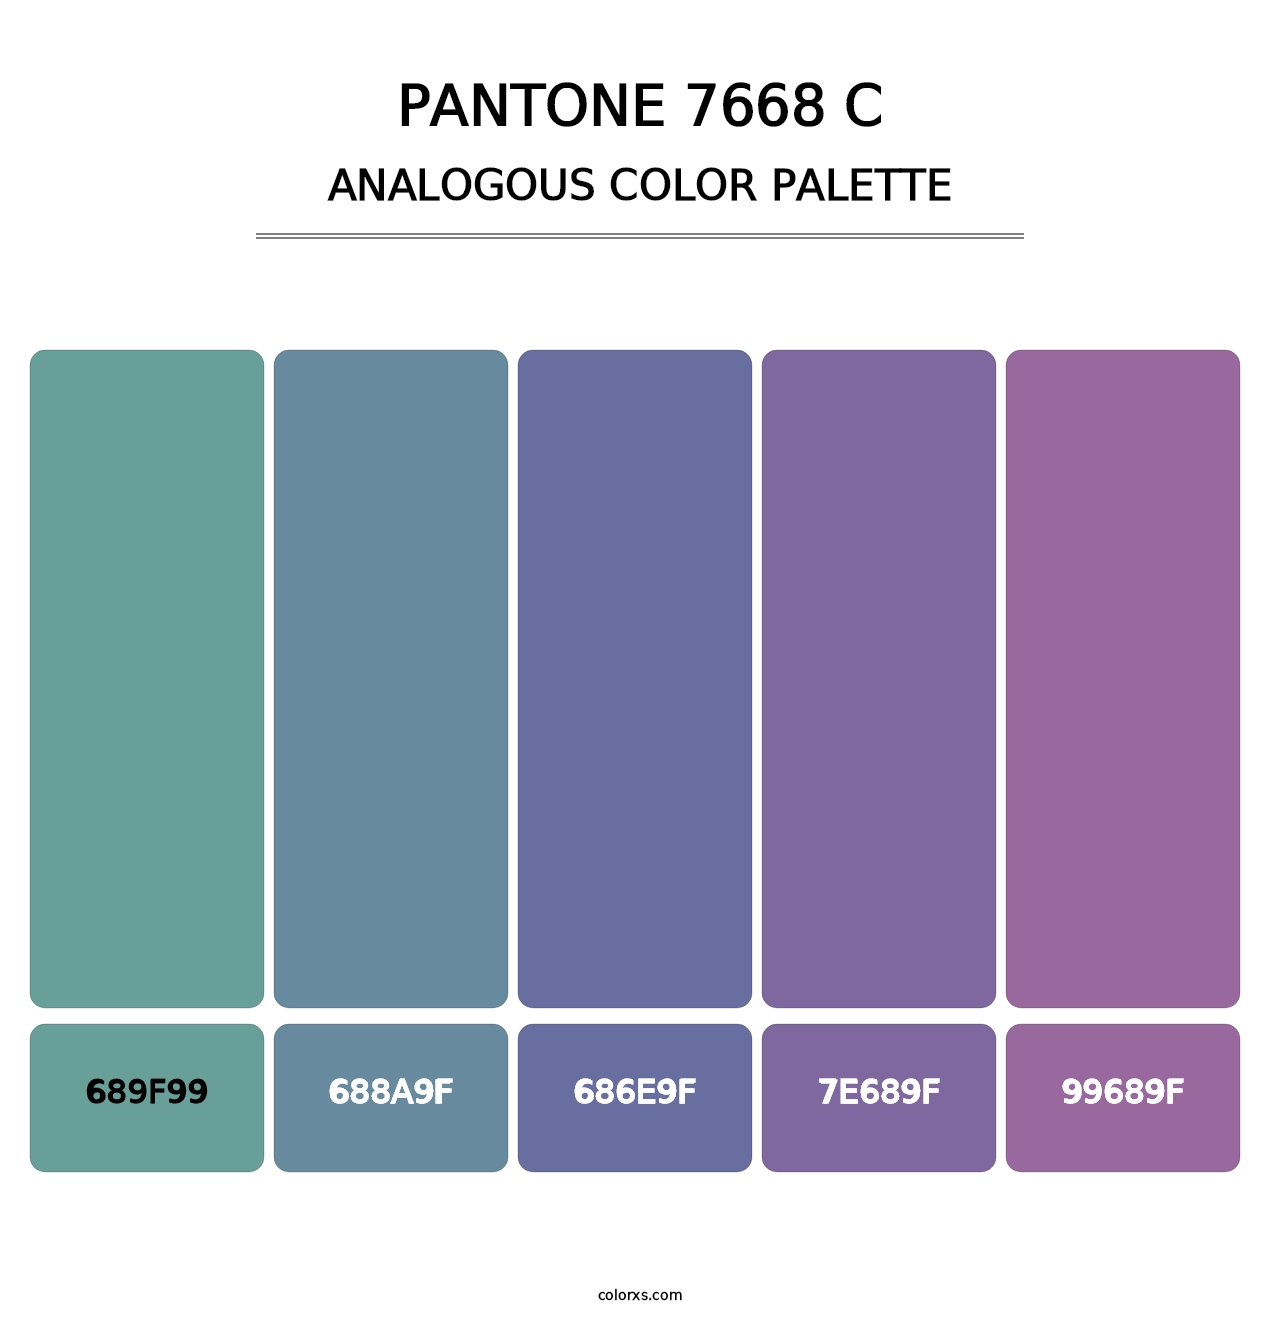 PANTONE 7668 C - Analogous Color Palette